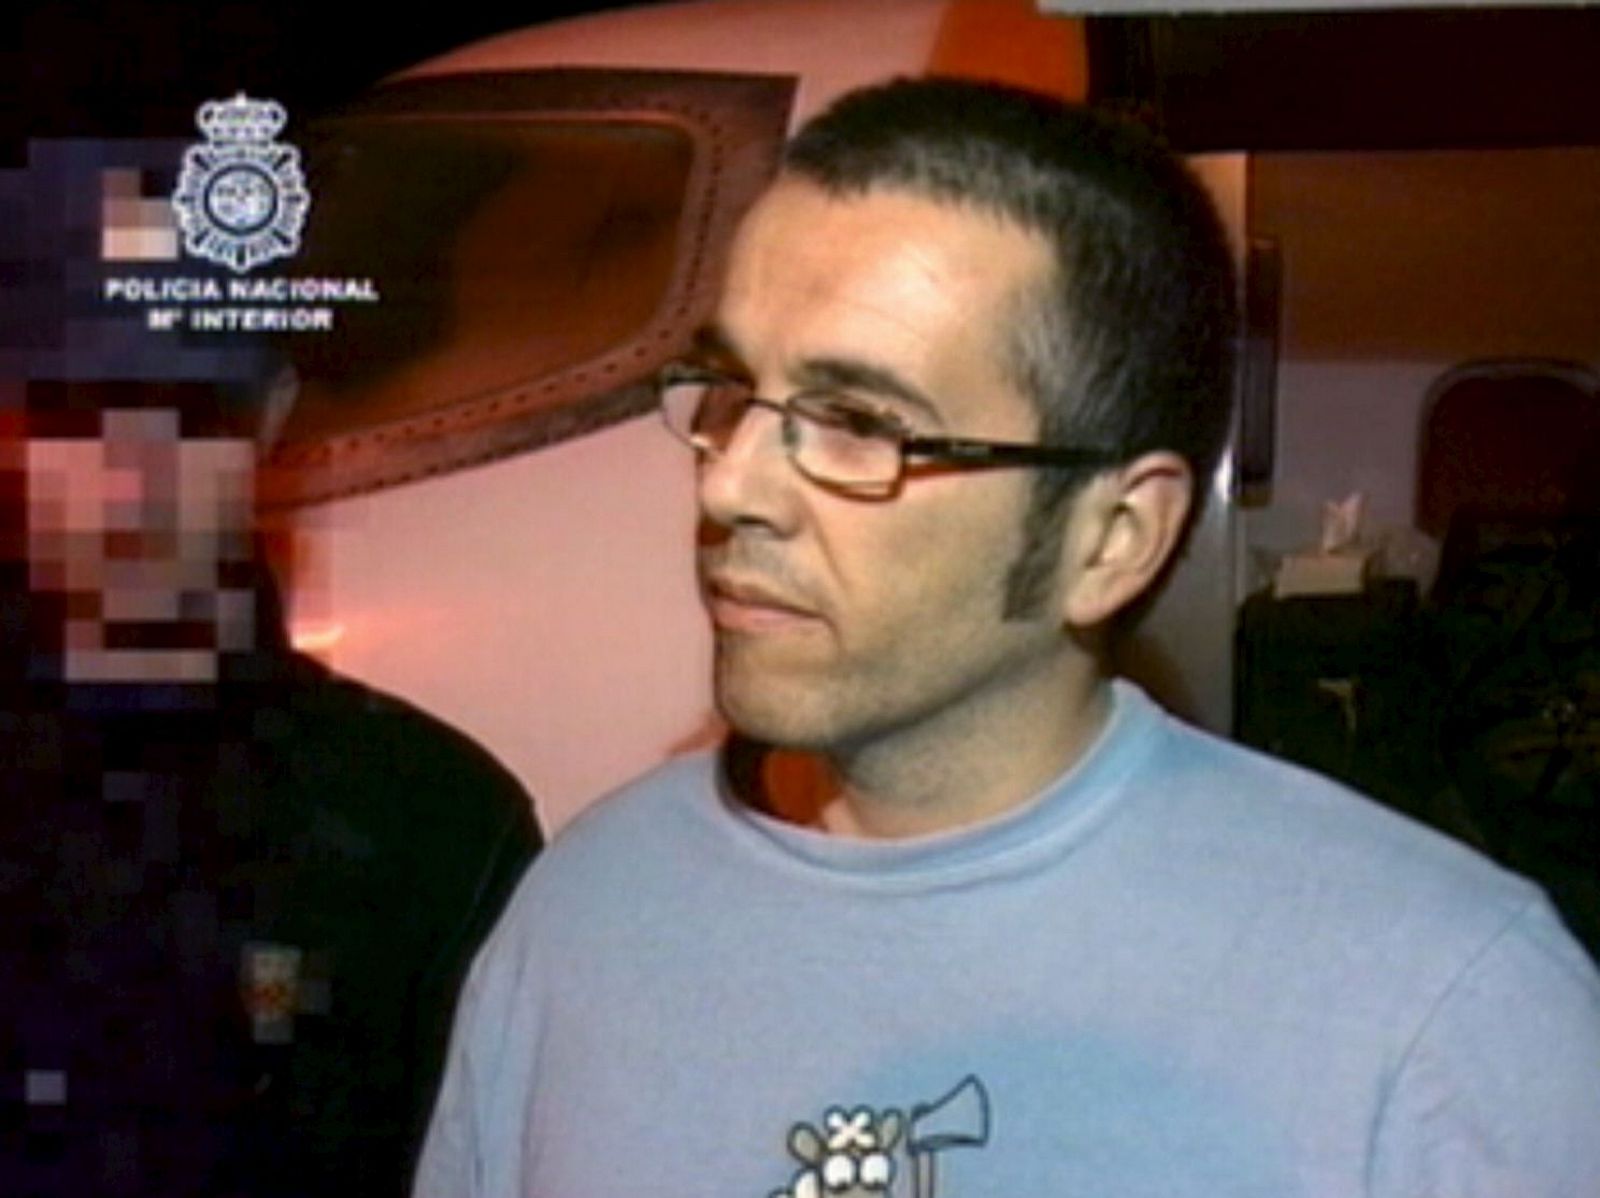 Canadá entrega al presunto miembro de ETA Iván Apaolaza